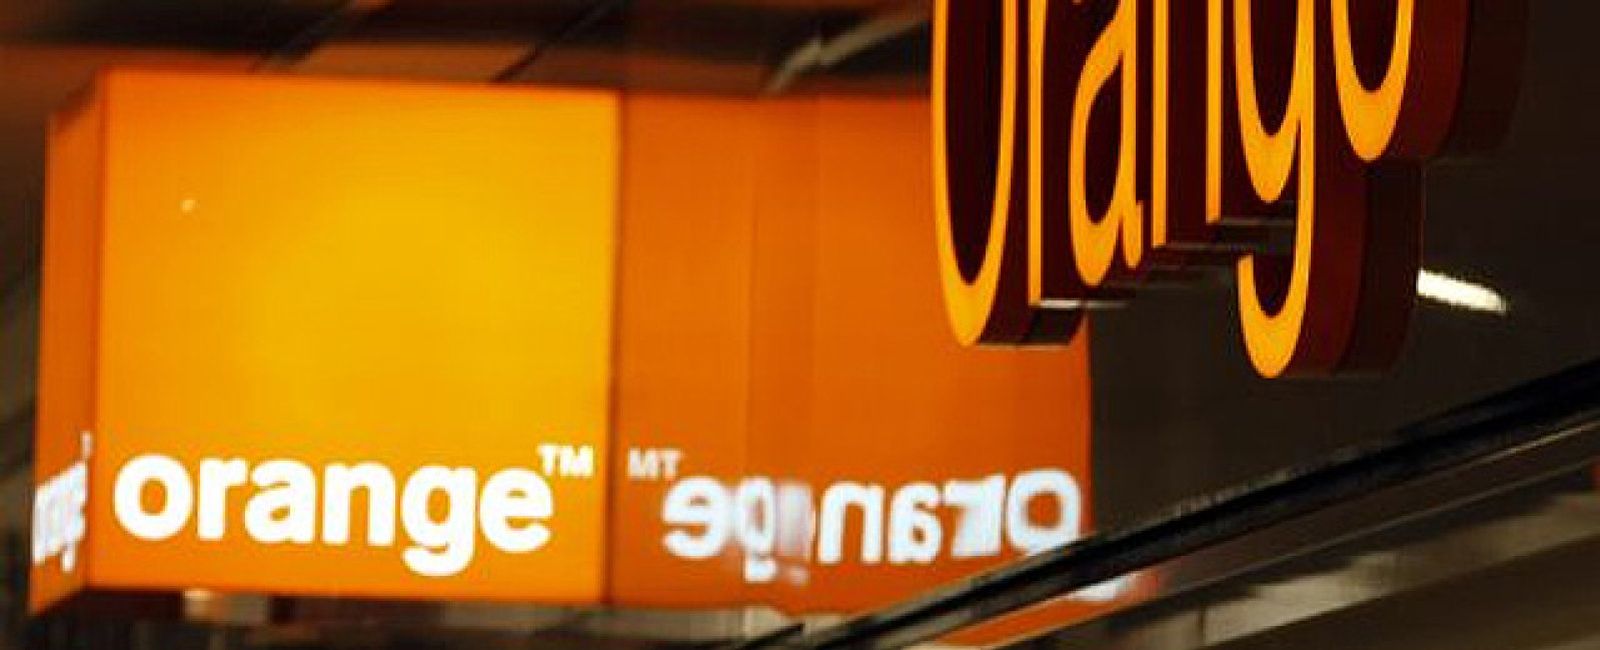 Foto: Orange presenta sus tarifas 4G: velocidad ultrarrápida desde 23 euros al mes